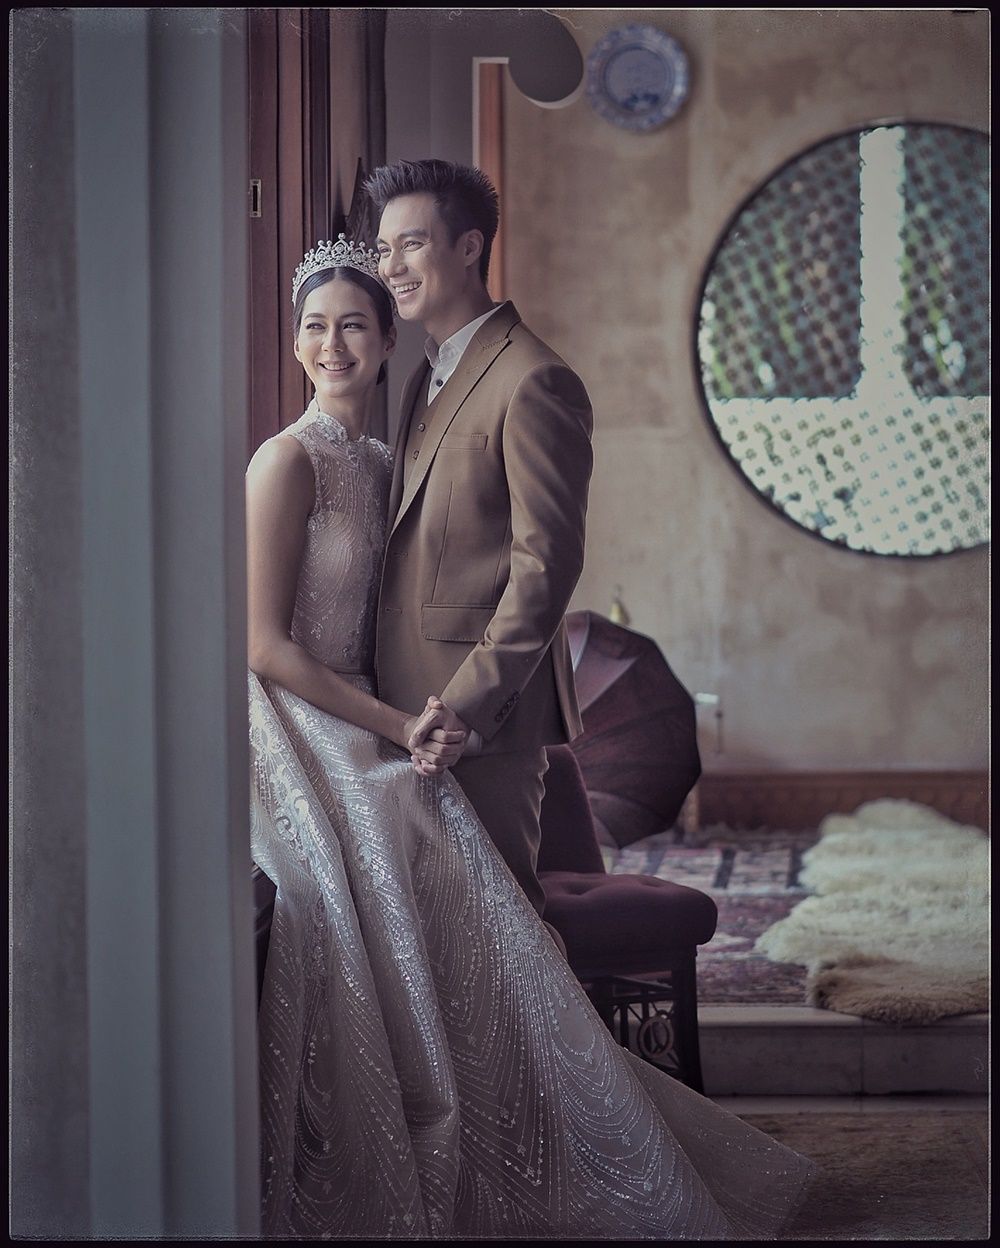 Bergaya Klasik Ini 10 Foto Pre Wedding Baim Wong Dan Paula Verhoeven